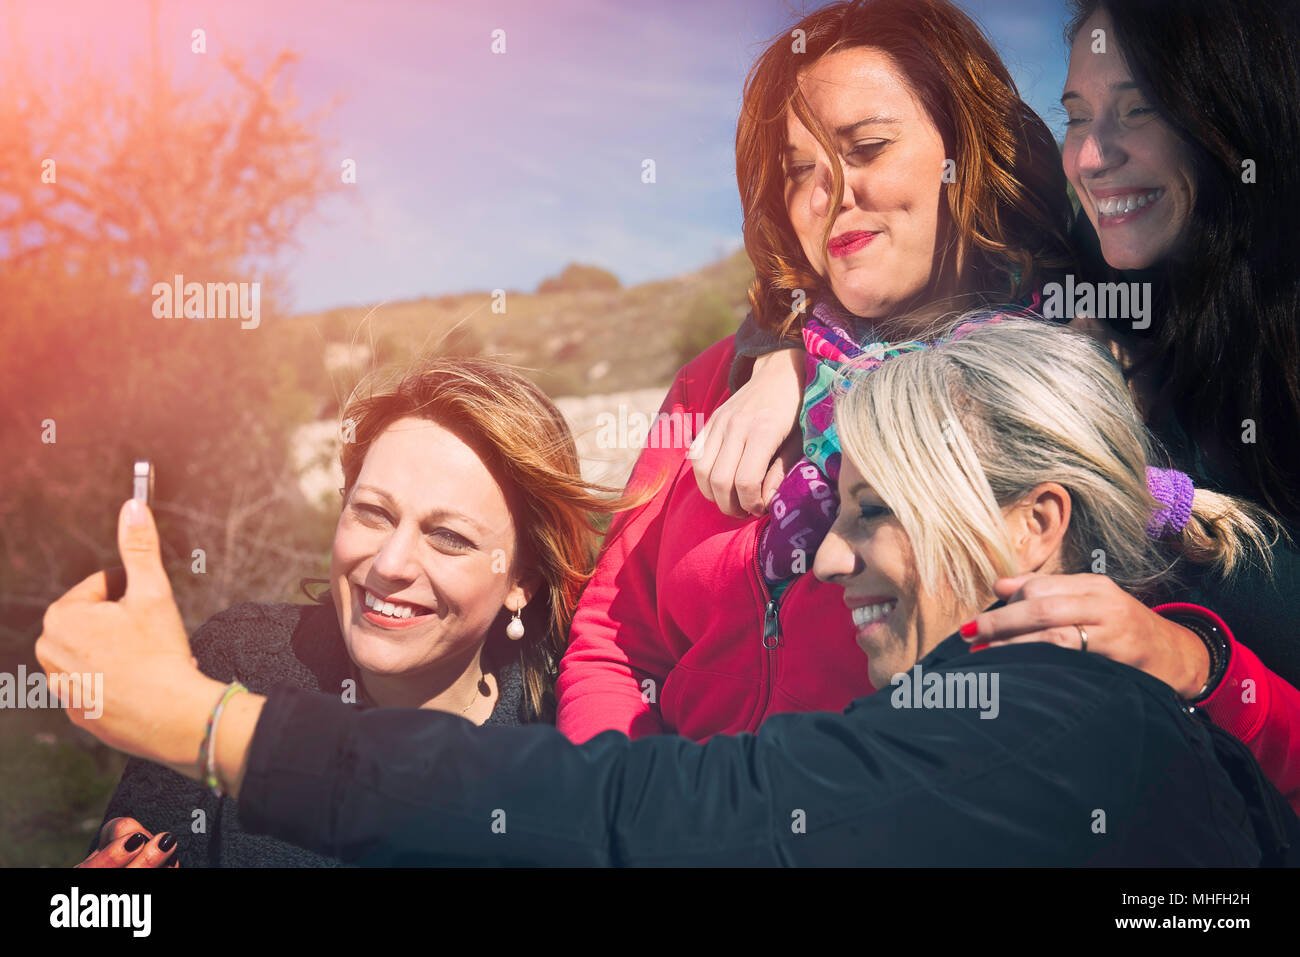 Selfie between women Stock Photo